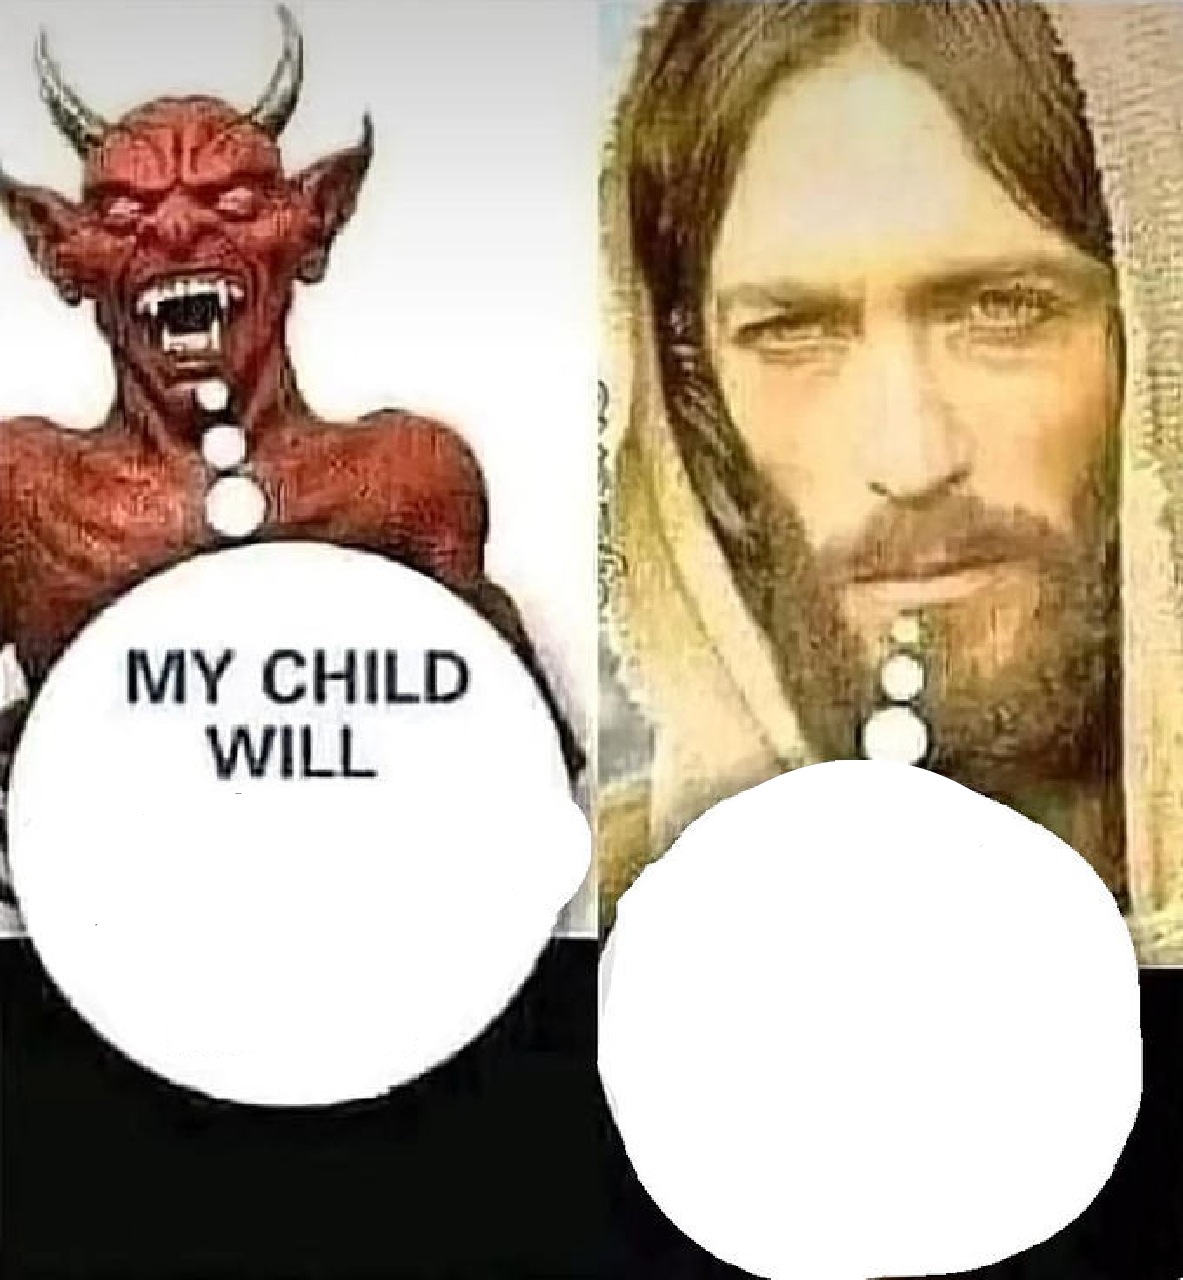 satan-vs-jesus-memes-imgflip